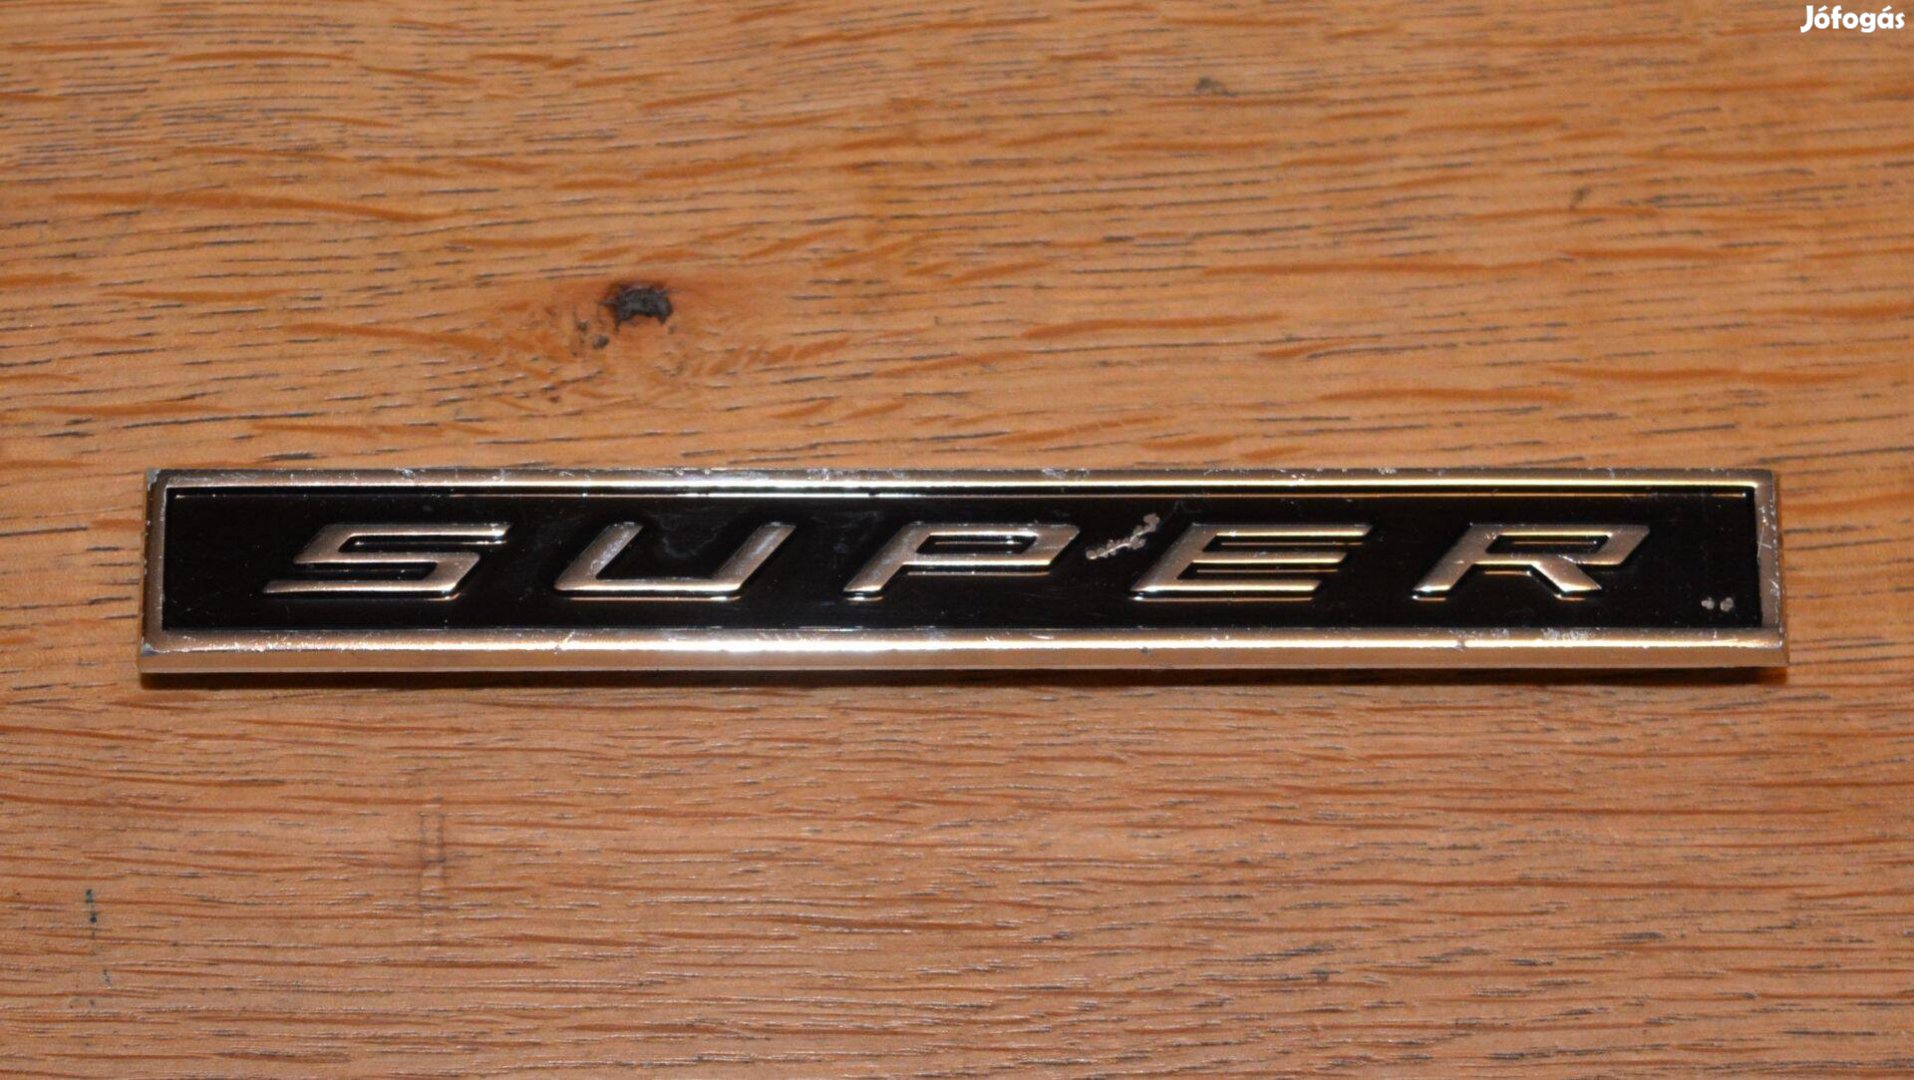 Opel Kadett Rekord - Super - felirat eredeti gyári embléma